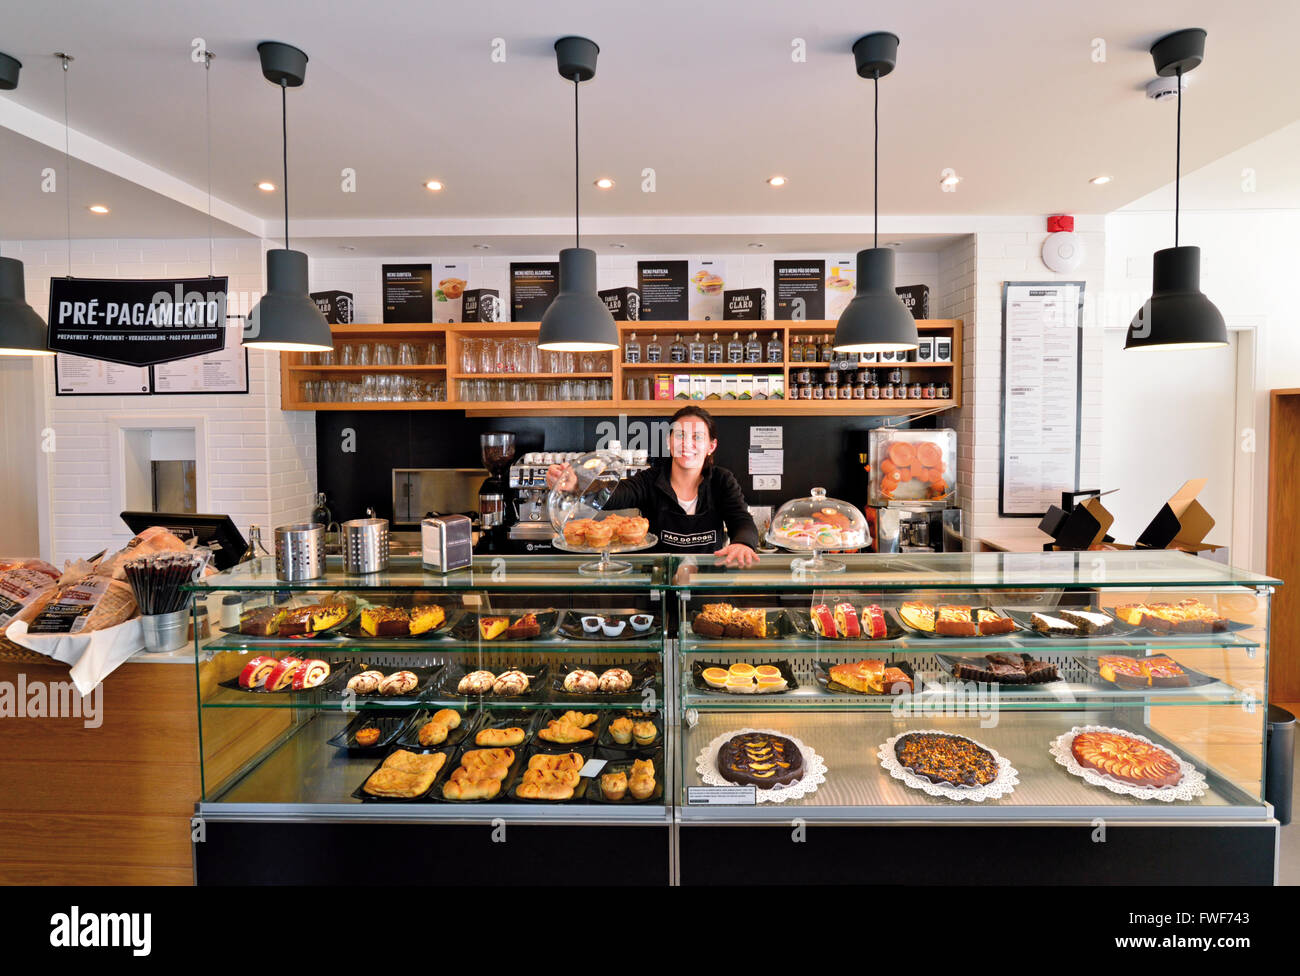 Portugal, Algarve: Interior de panadería/cafetería Pao ¿Rogil con una variedad de tortas y pastelería tradicional Foto de stock